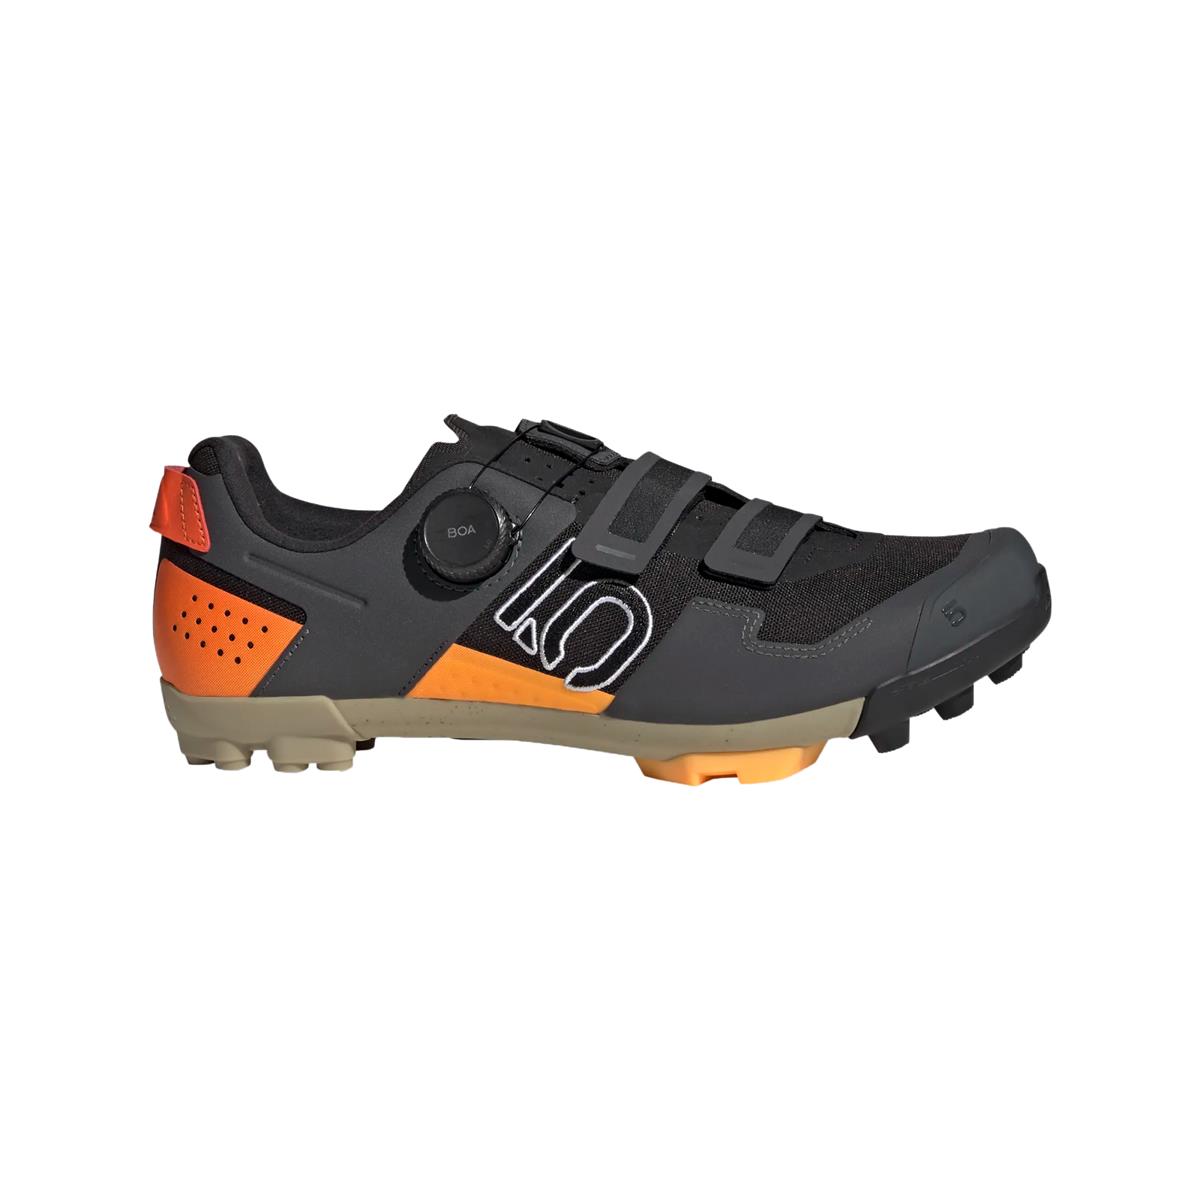 Clip 5.10 Kestrel Boa MTB Shoes Black/Orange Size 41